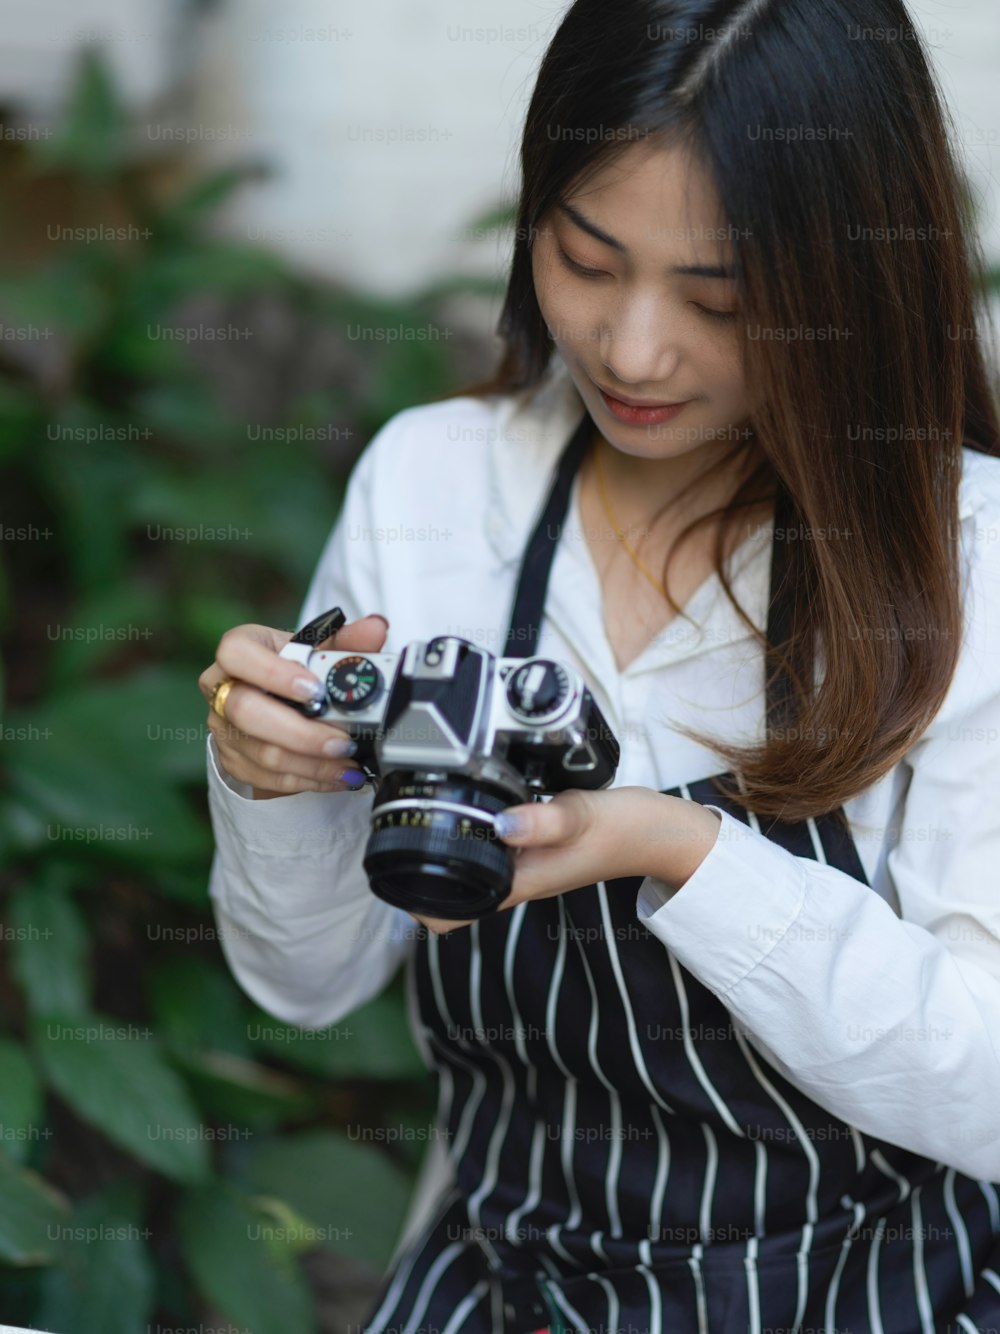 Ritratto di fotografa femminile con grembiule che controlla l'immagine sulla fotocamera digitale mentre scatta foto in caffè